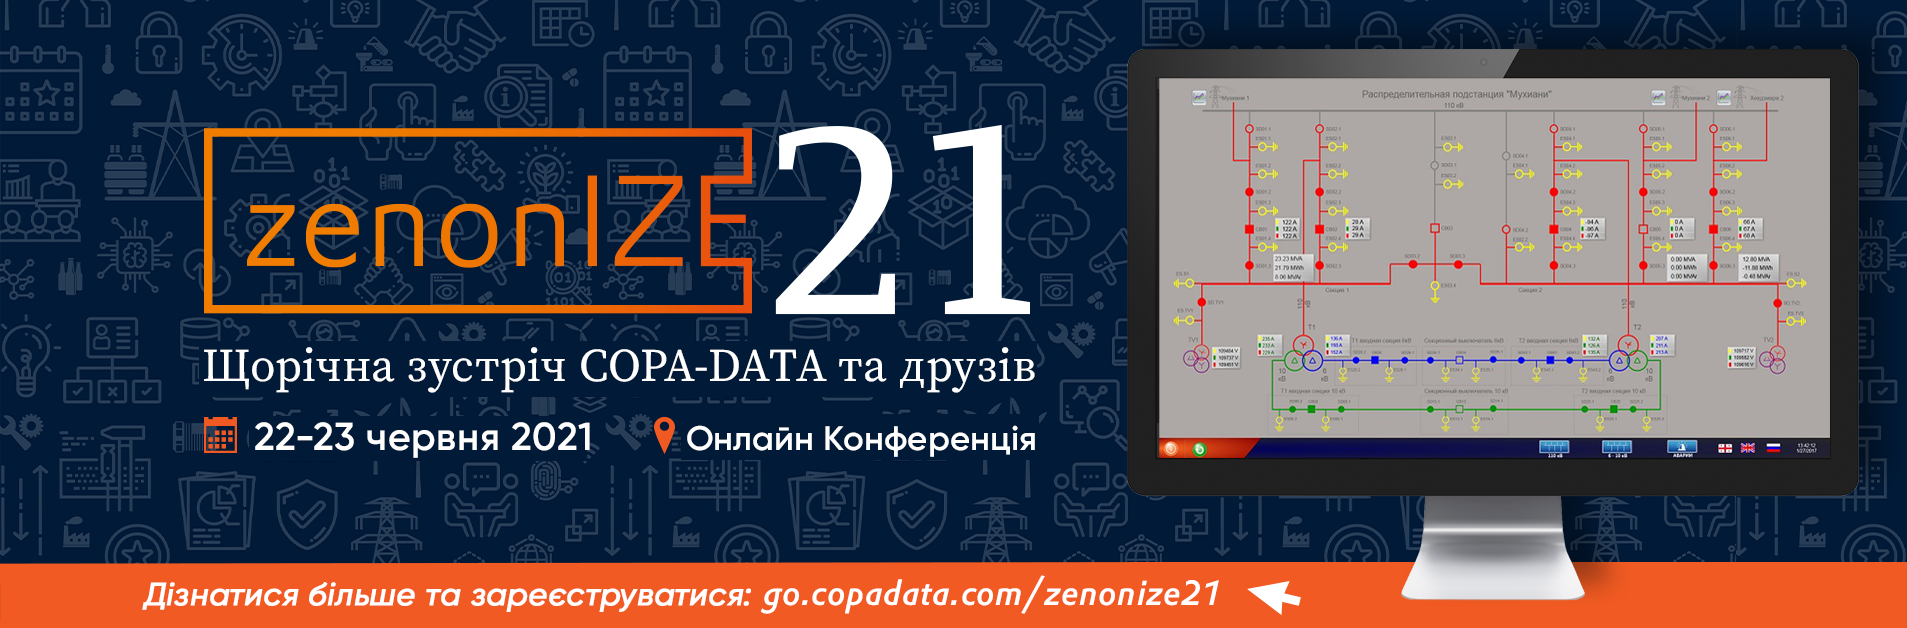 zenonIZE 21